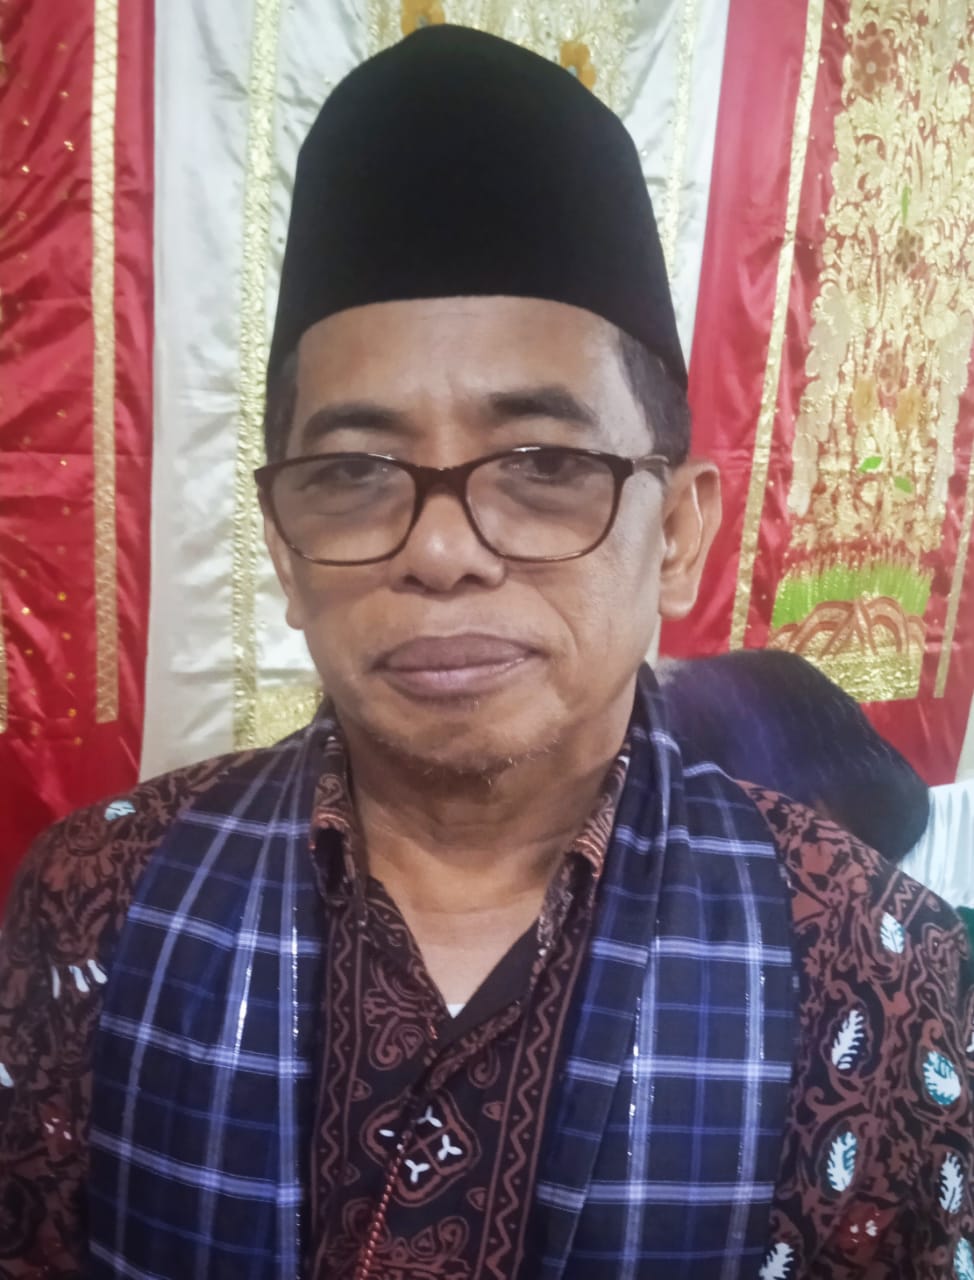 Kabid Warisan dan Budaya Minang Kabau Kanwil Disbud Sumbar, Aprimas, S.Pd, M.Pd.